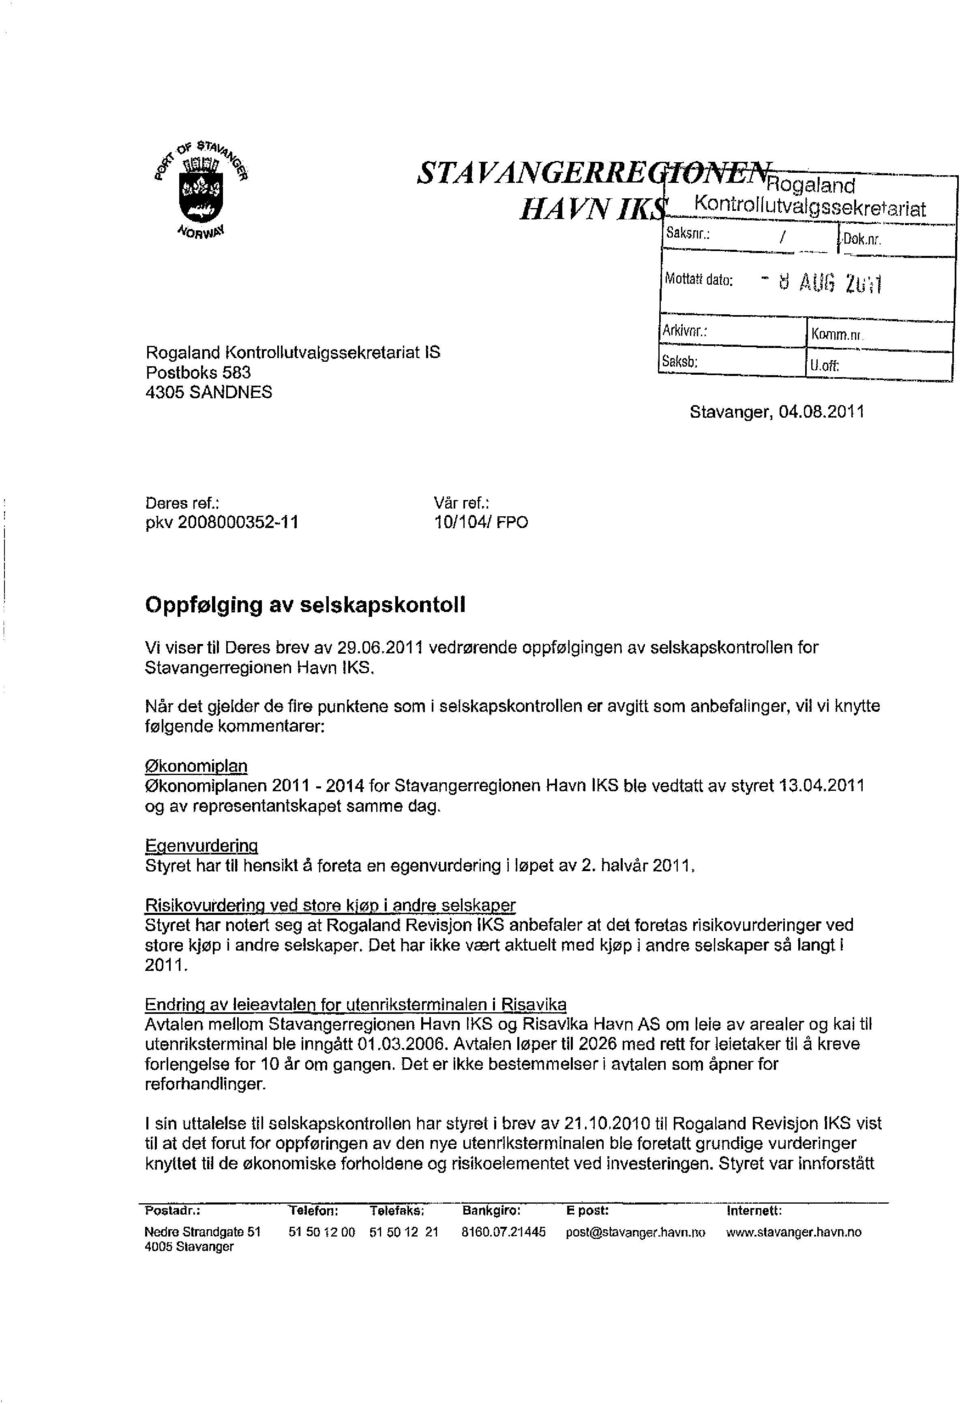 : pkv 2008000352-11 Vår ref.: 10/104/ FPO Oppfølging av selskapskontoil Vi viser til Deres brev av 29.06.2011 vedrørende oppfølgingen av selskapskontrollen for Stavangerregionen Havn IKS.